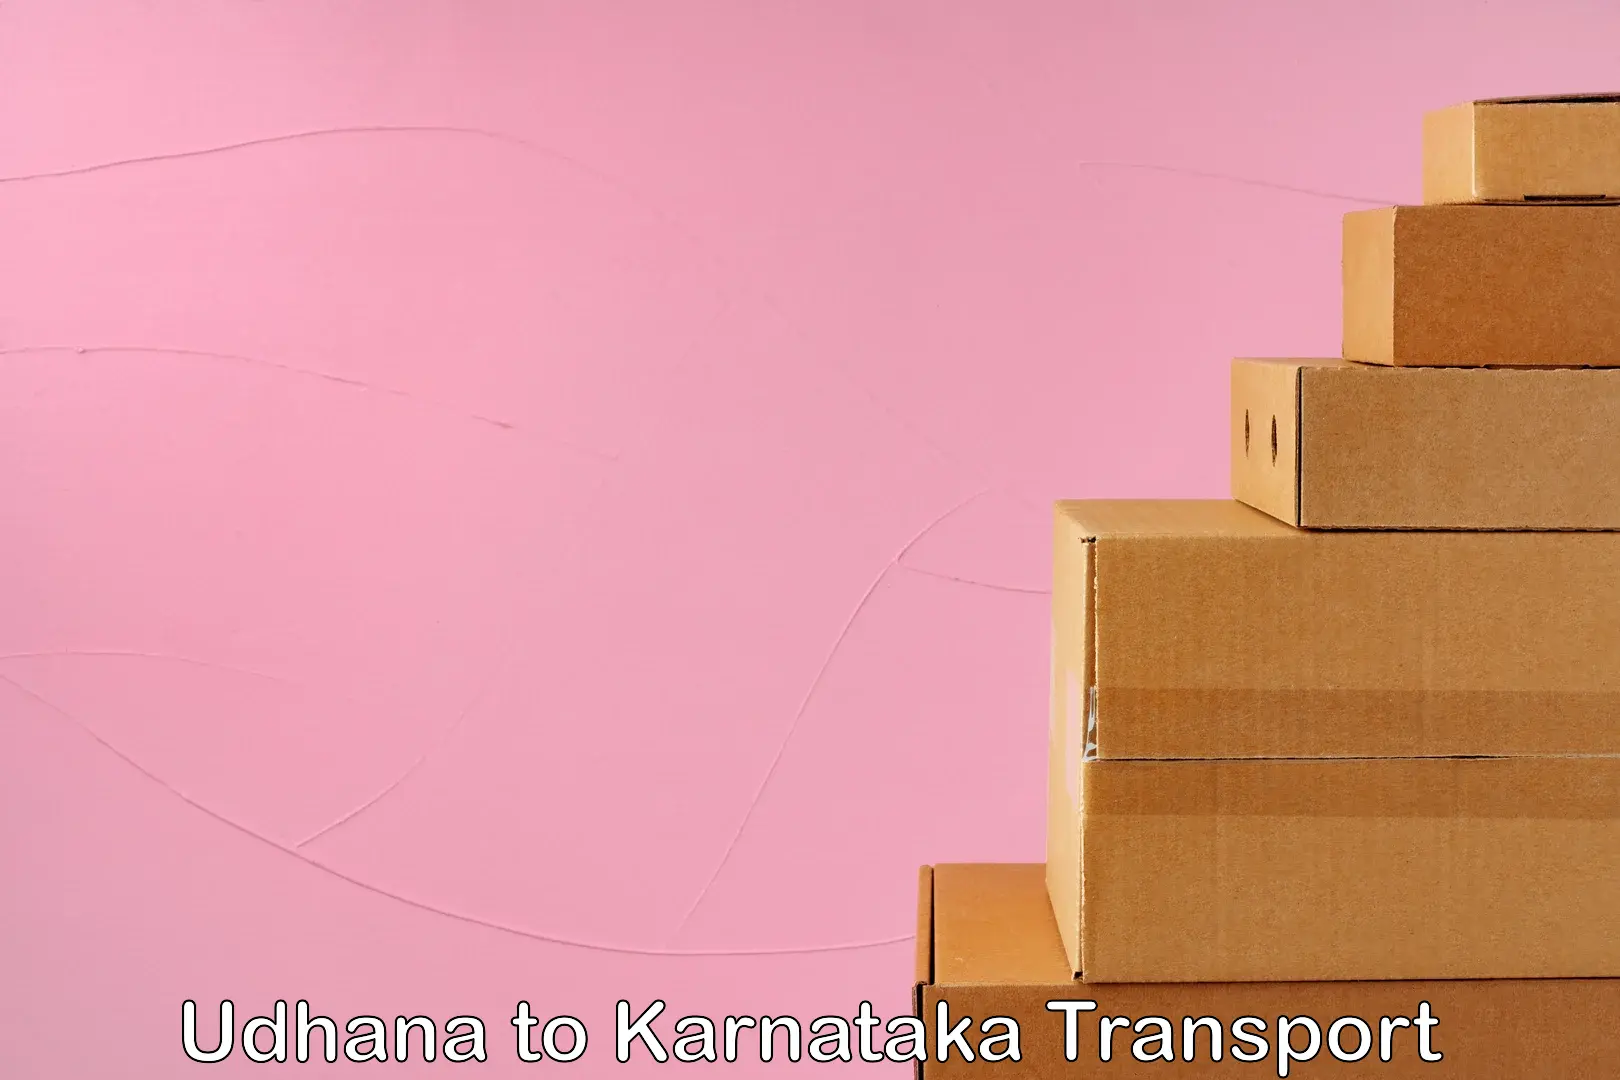 Intercity goods transport Udhana to Karnataka